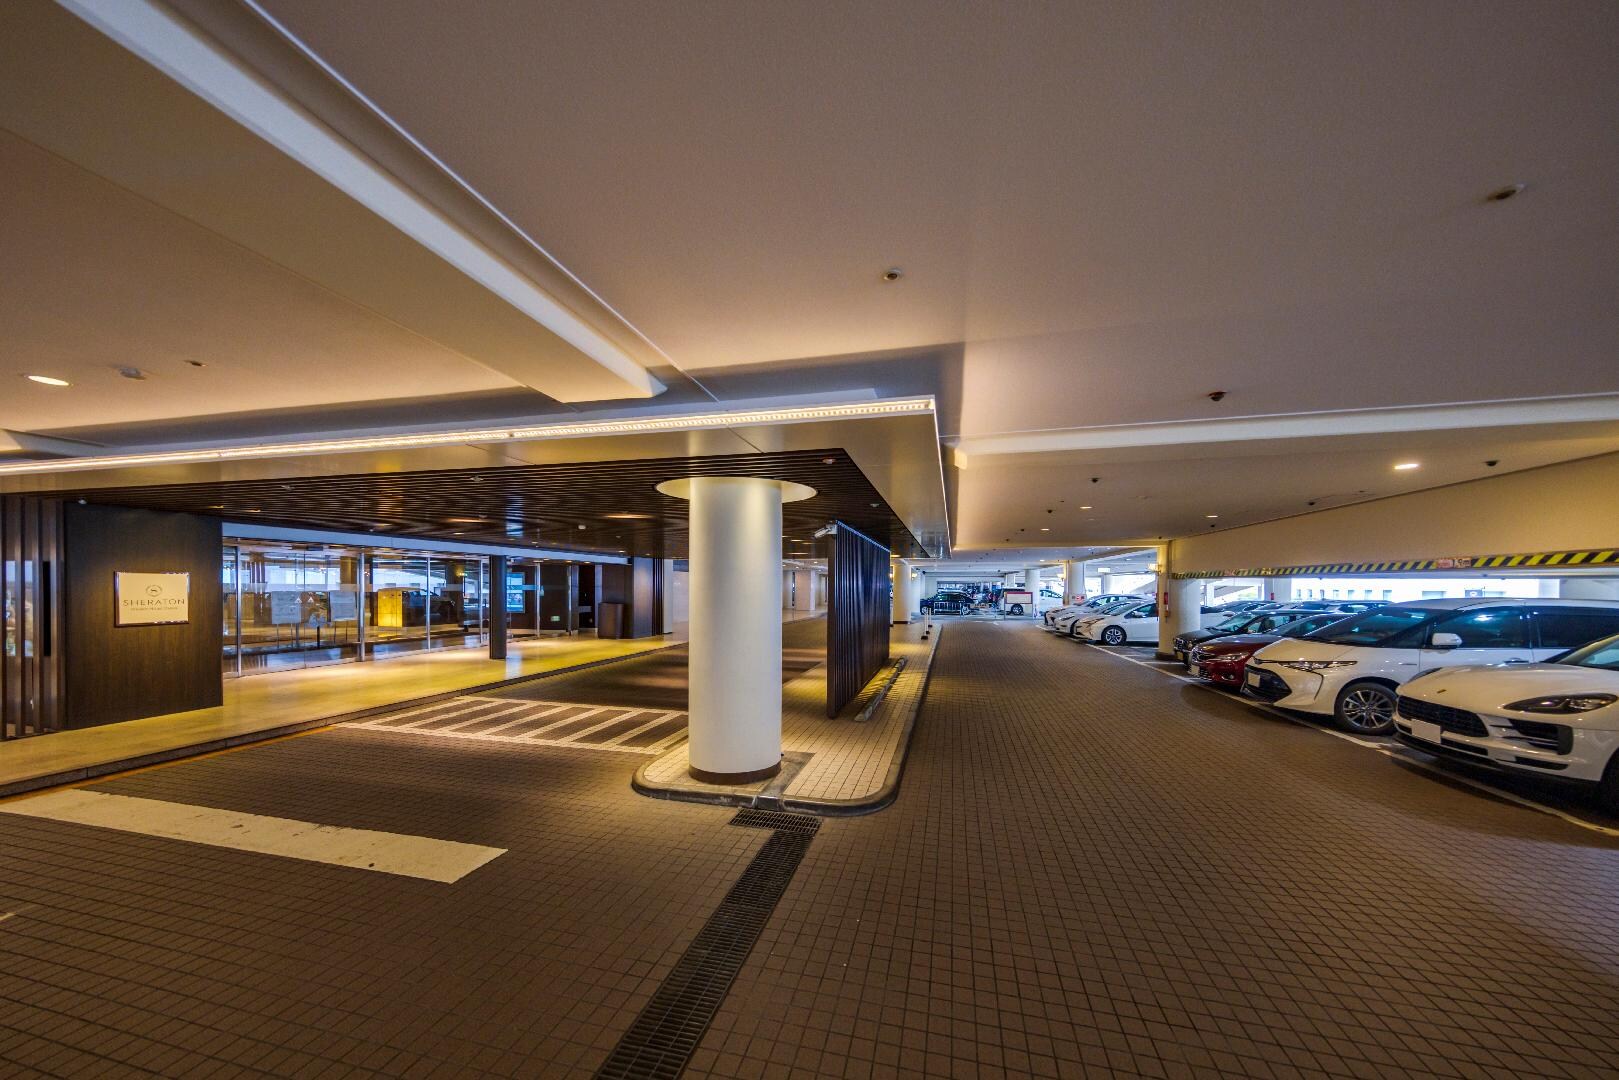 2nd floor entrance/parking lot